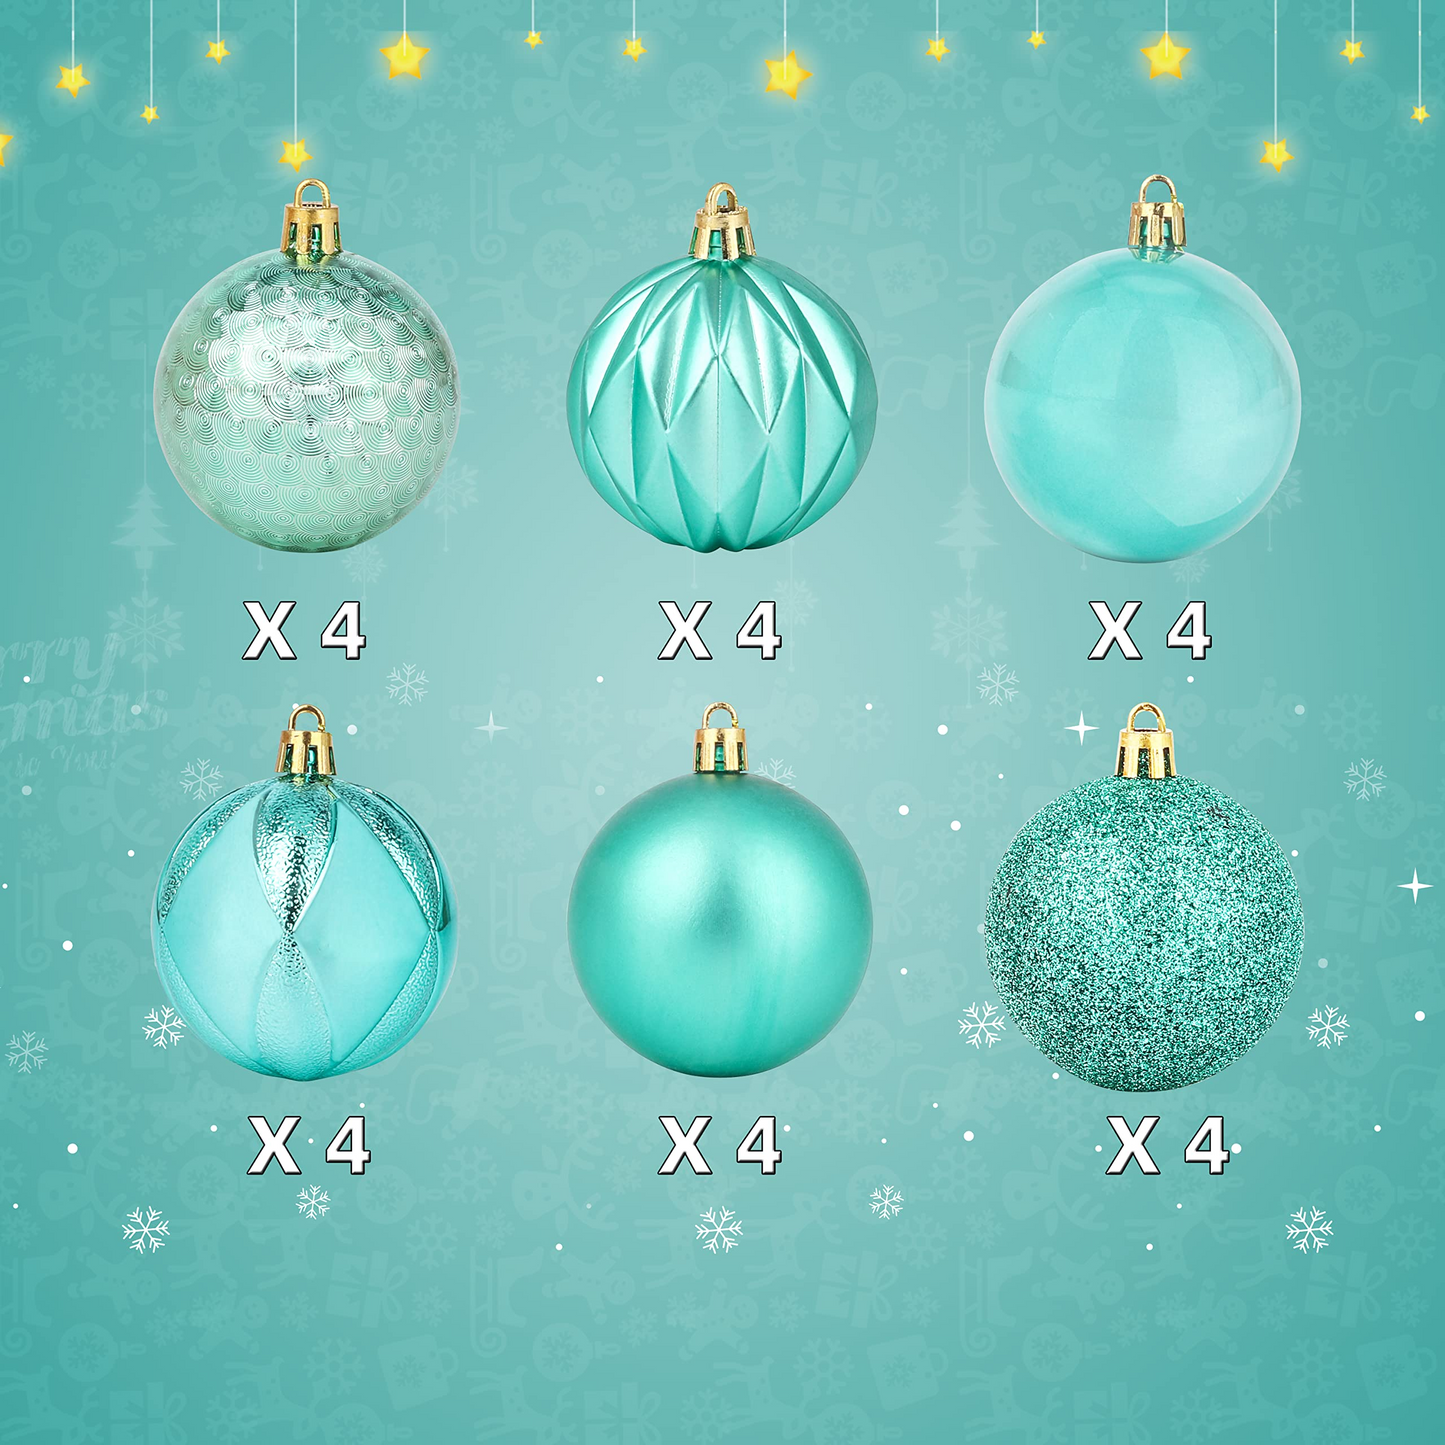 24ct 6CM Basic Christmas Ball Ornaments - Teal